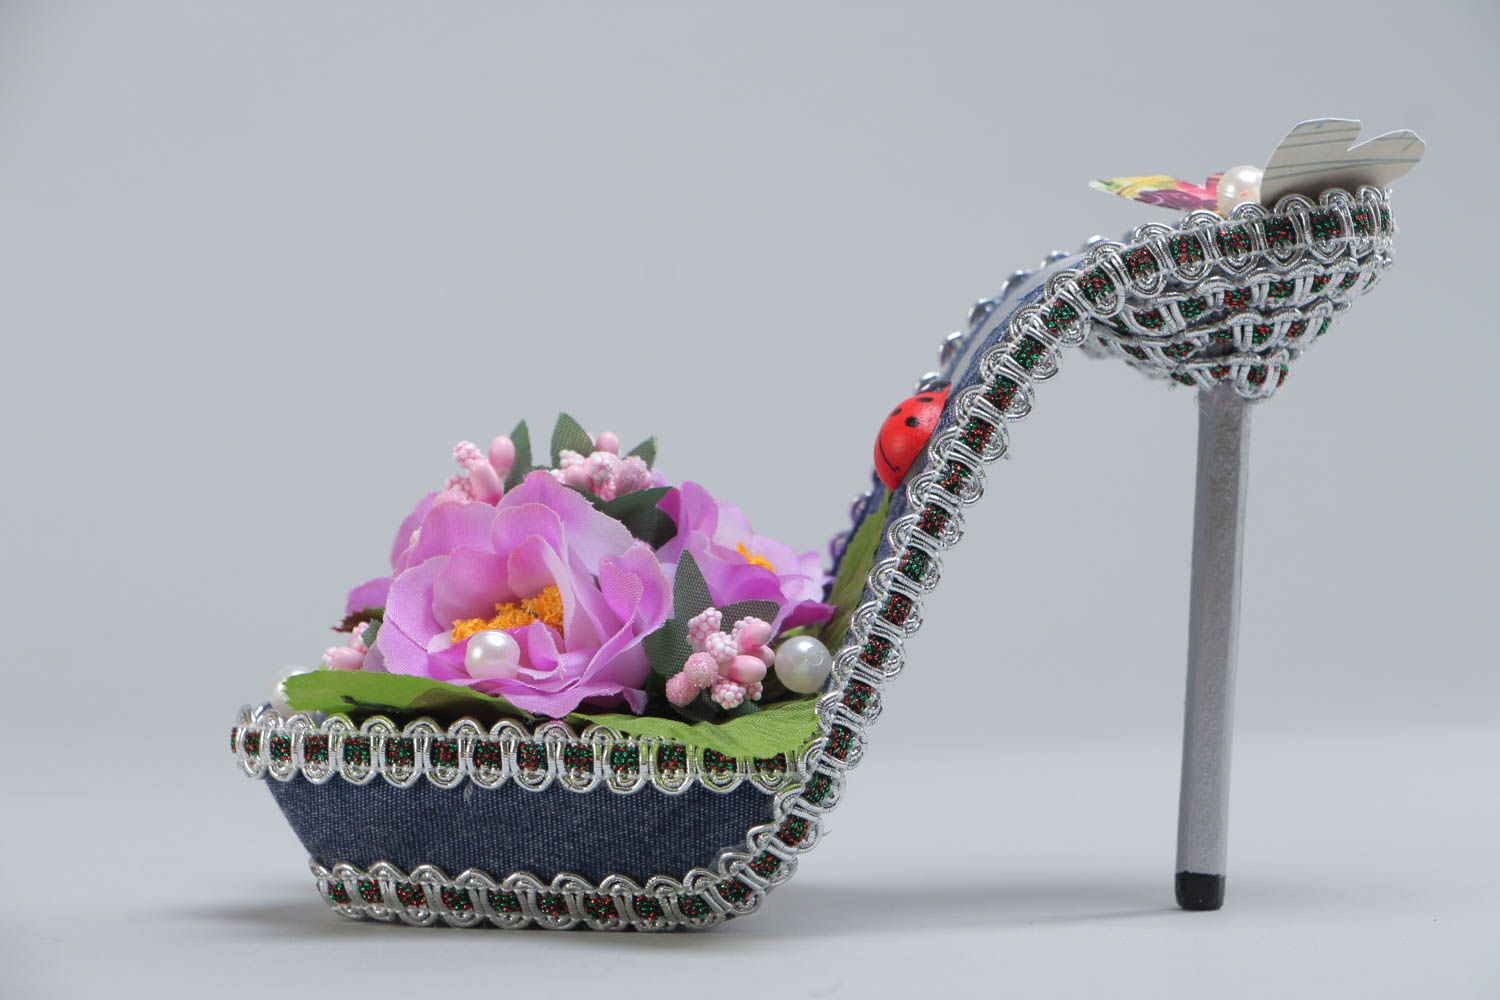 Декоративная туфелька с цветами для украшения дома топиарий цветная хэнд мейд фото 2